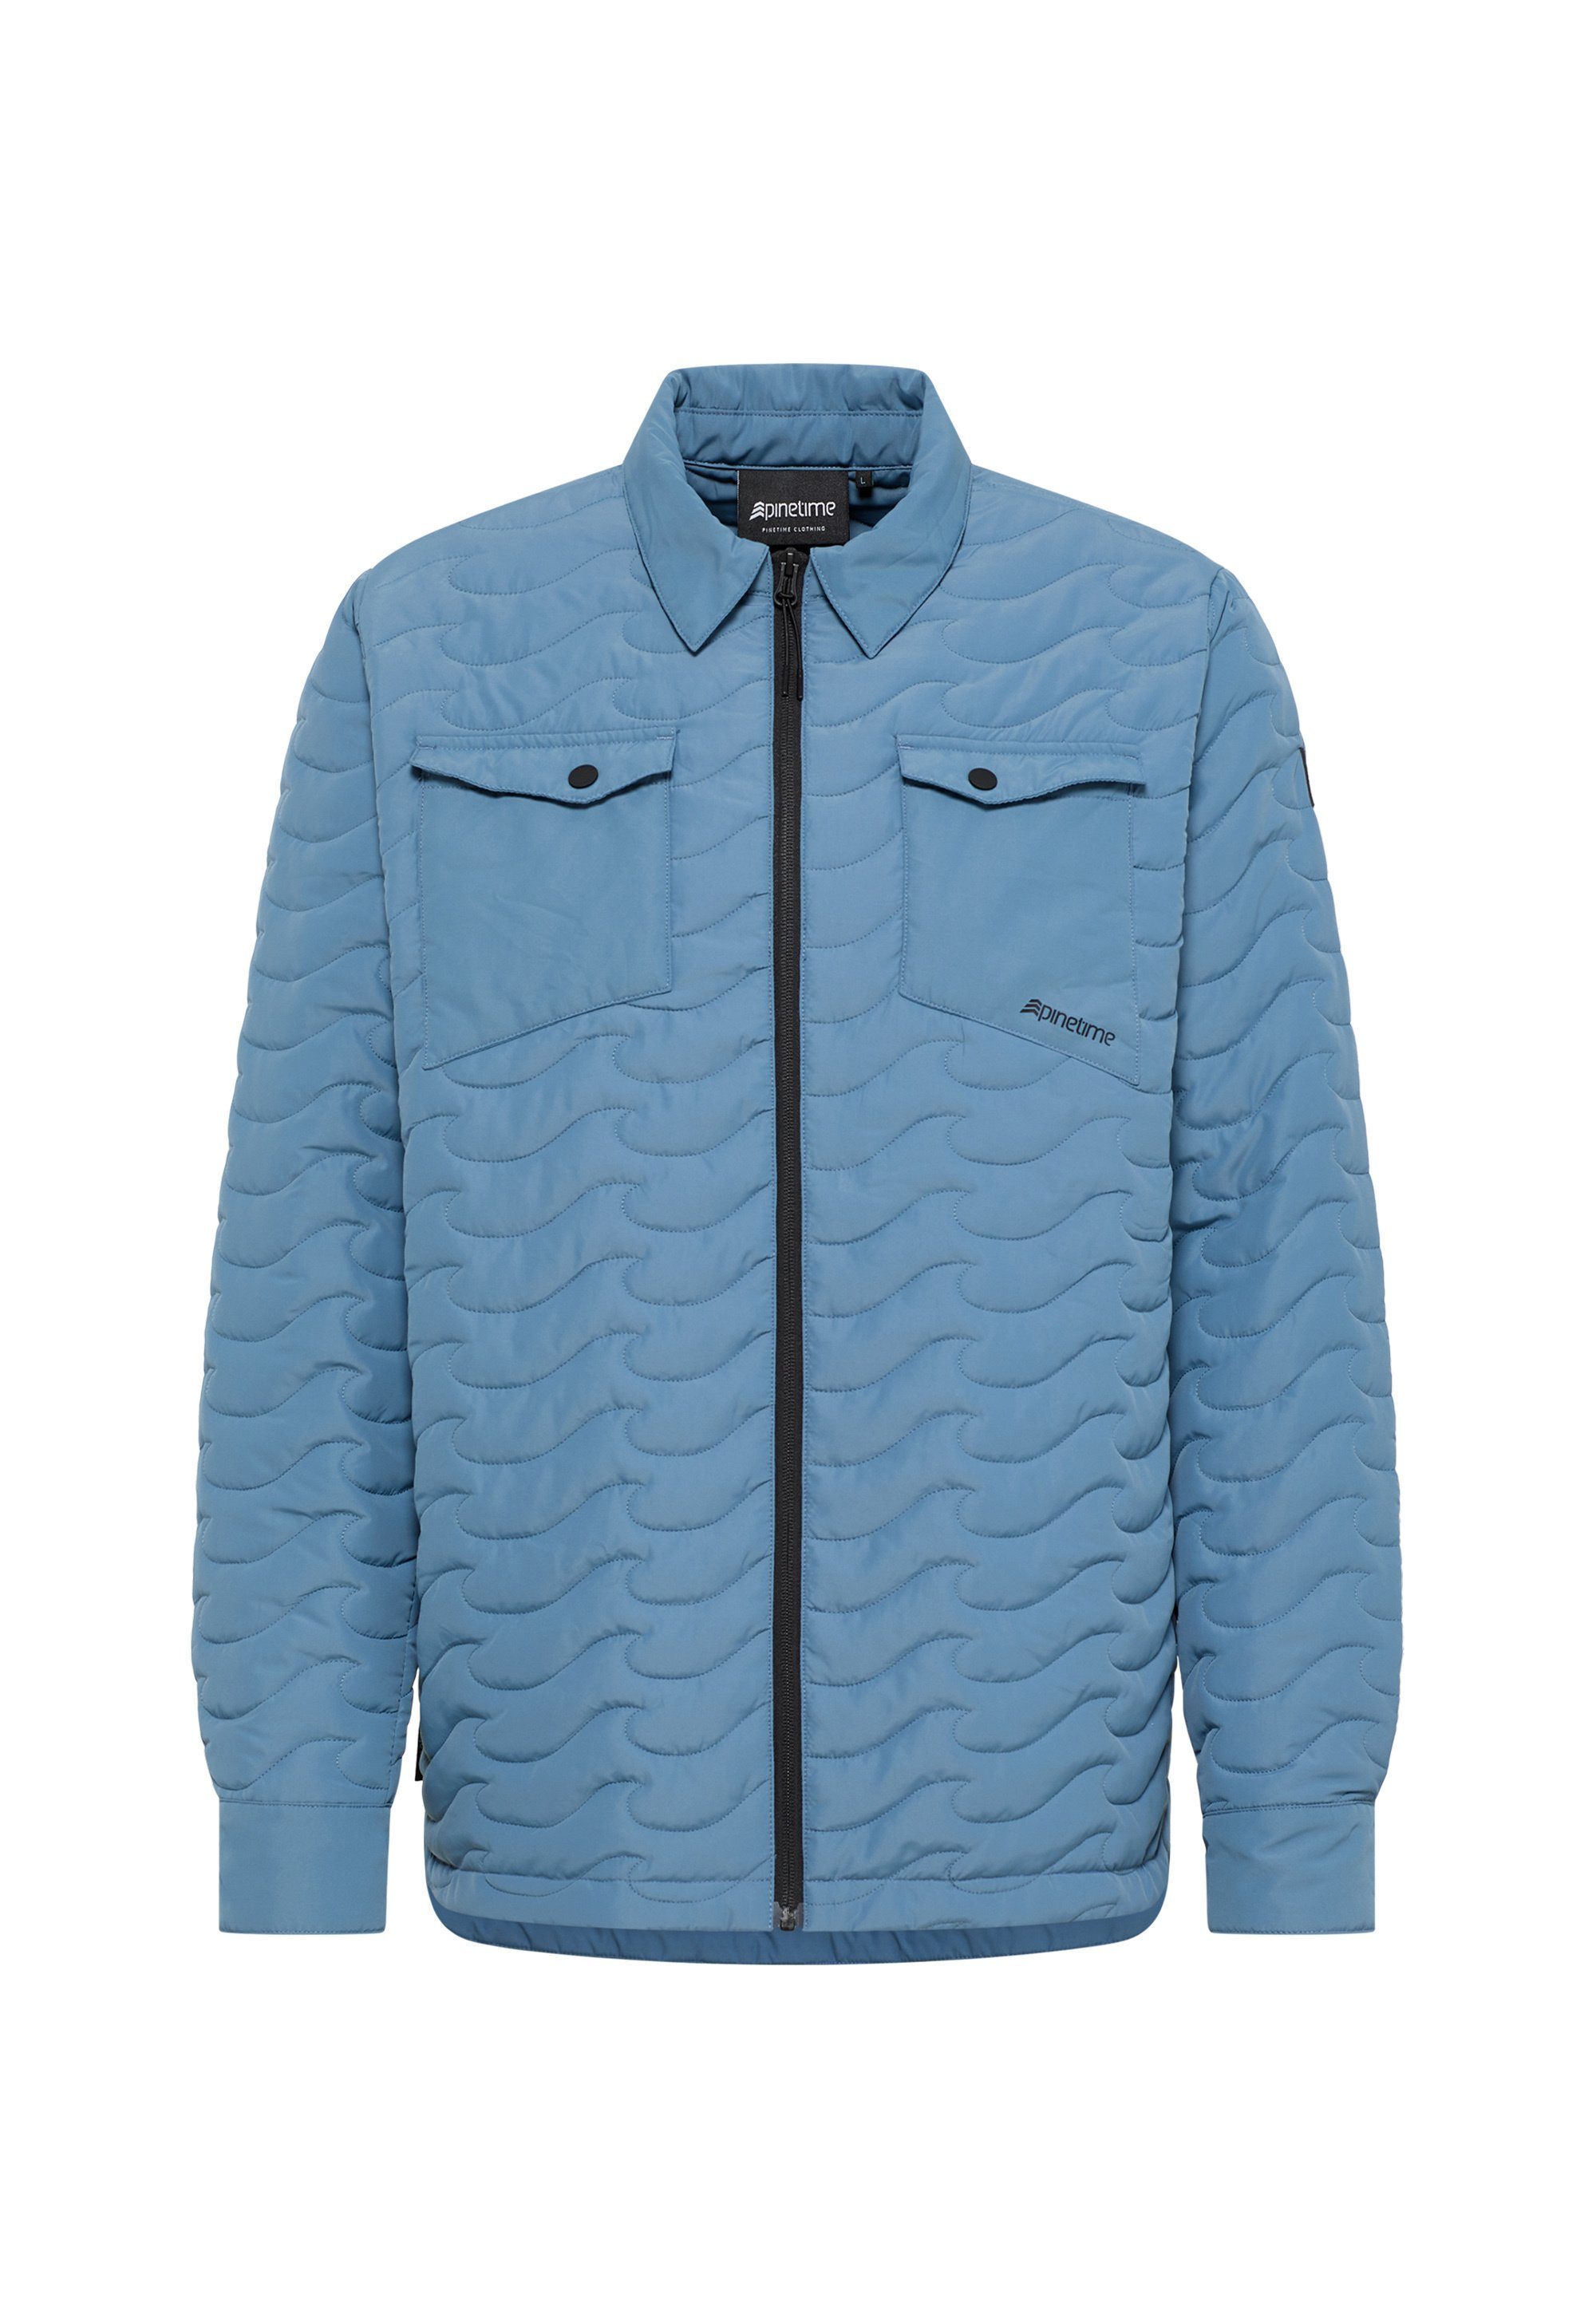 Jacket Insulated und gekleidet. Hemdjacke Sie unserer Wave Pinetime bluestone New stilvoll sind Steppjacke isolierten Mit warm Clothing